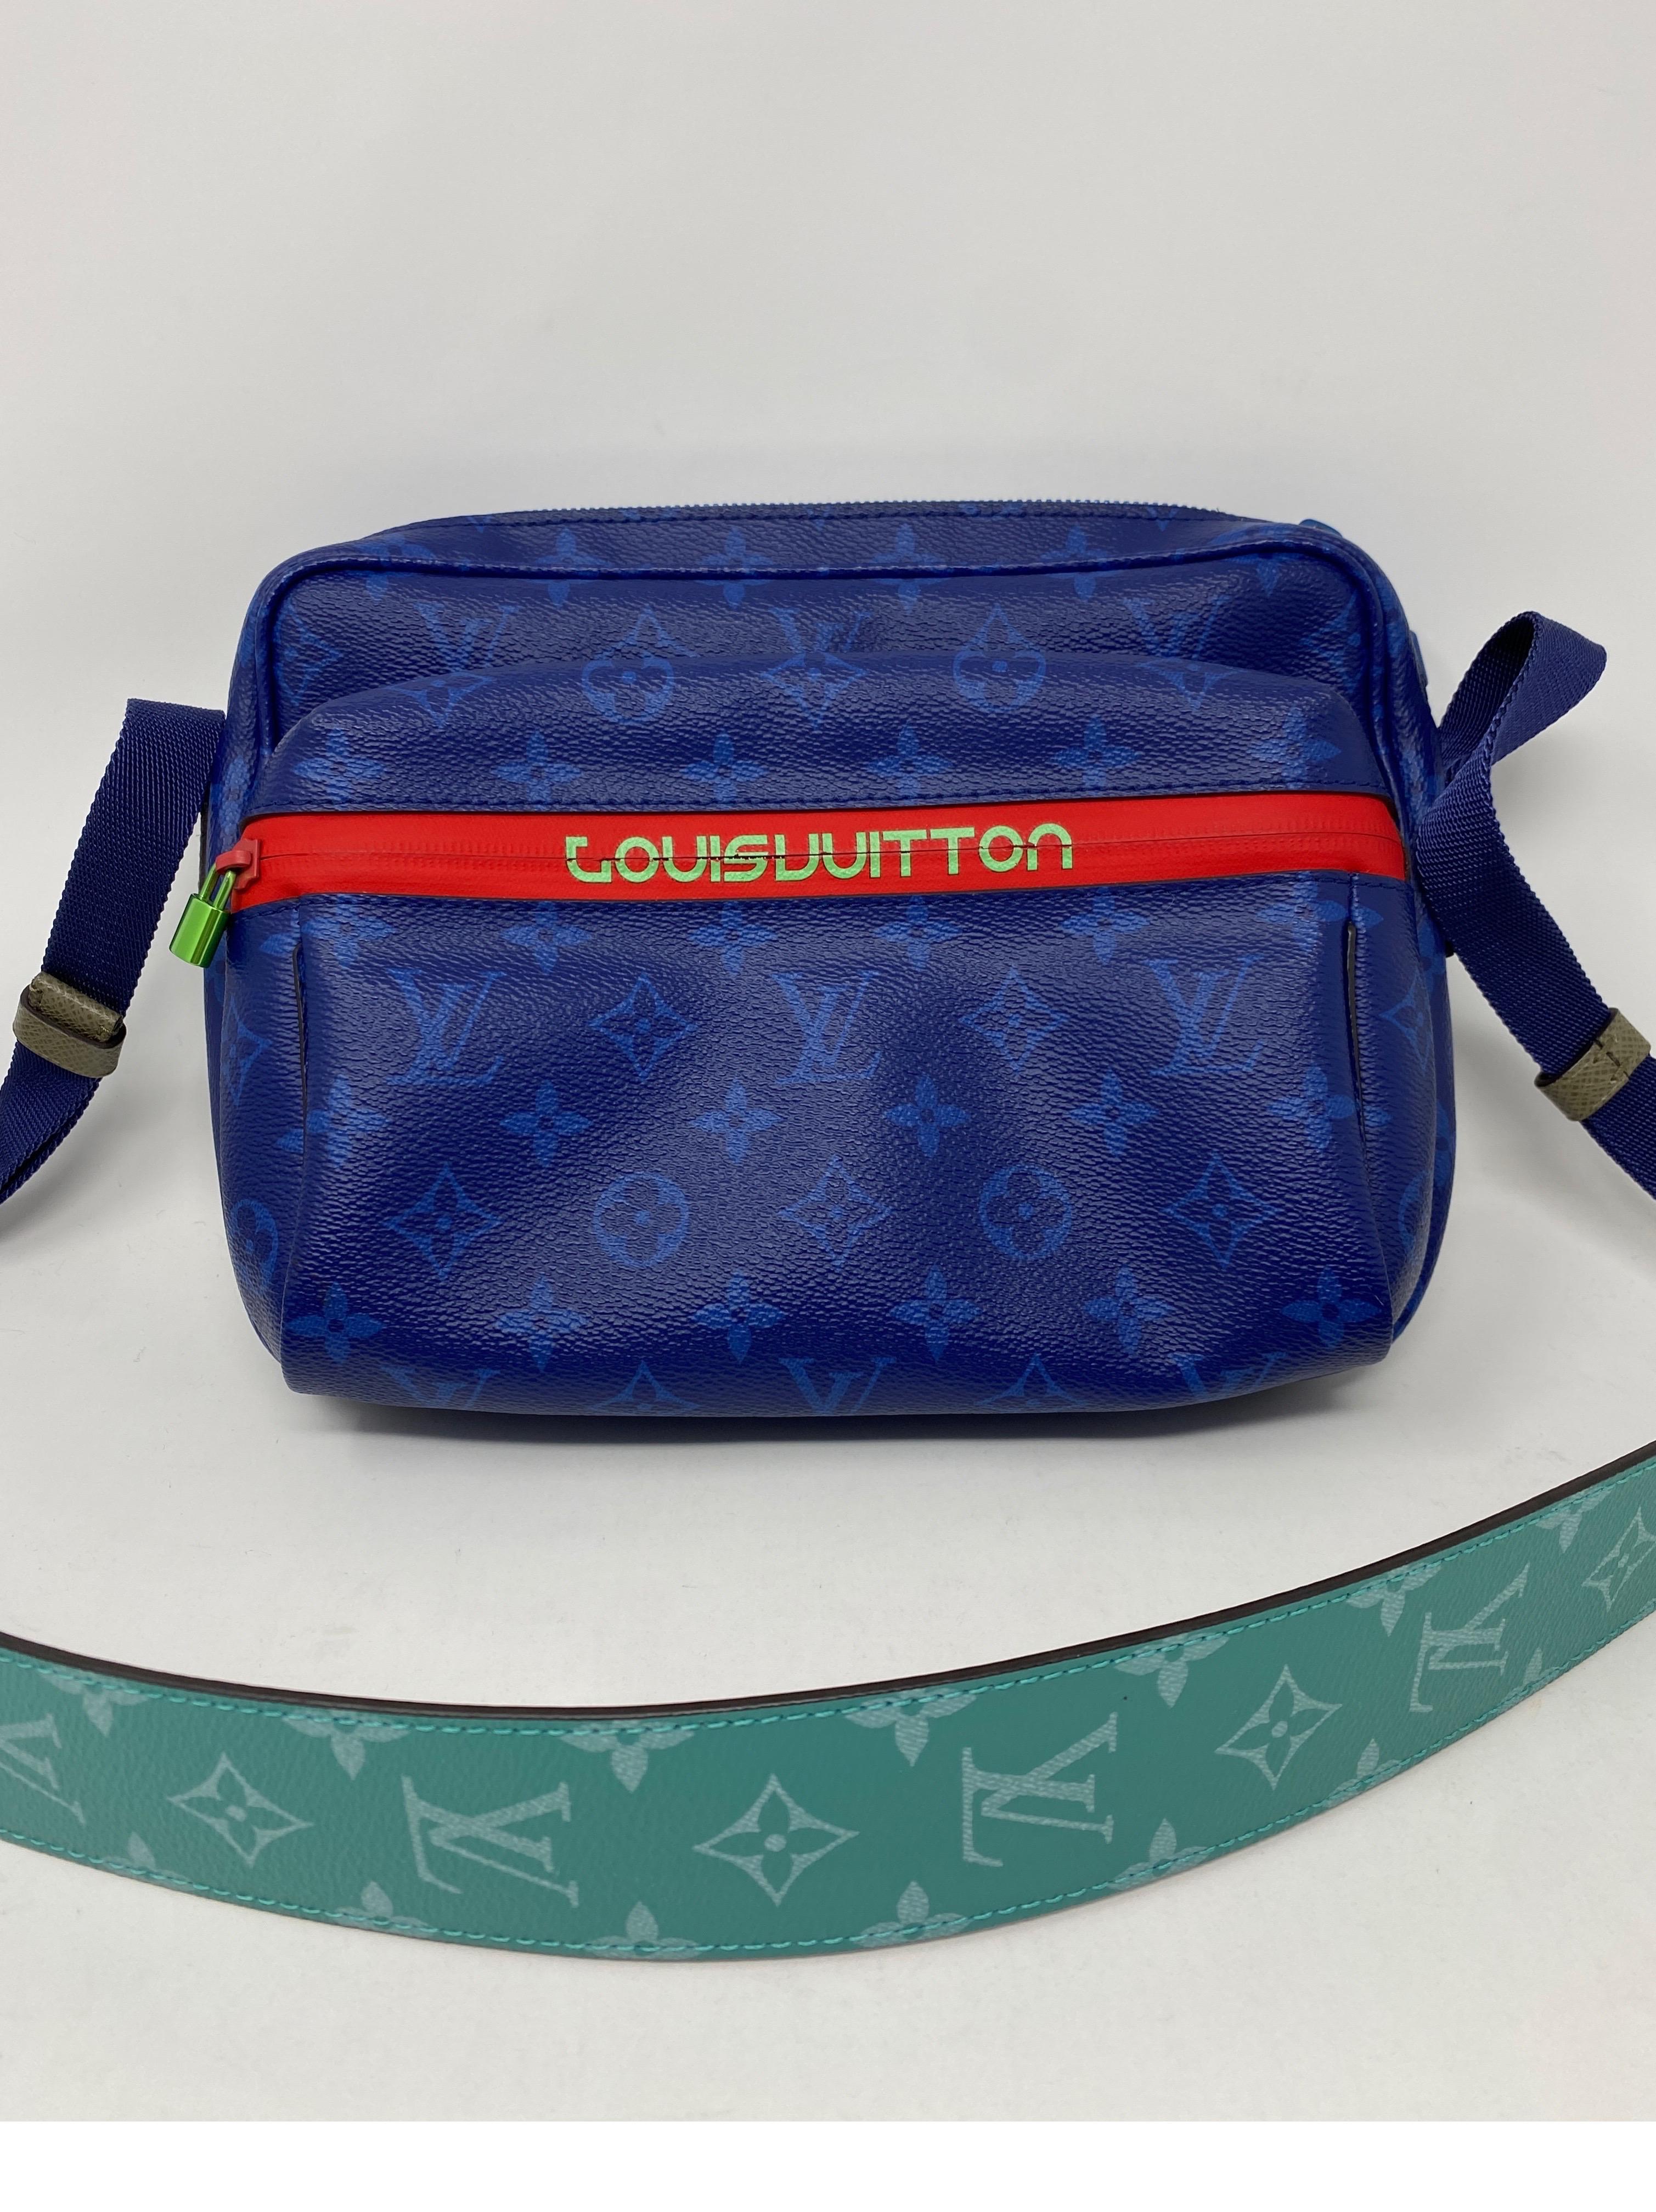 Women's or Men's Louis Vuitton Blue Taigarama Monogram Outdoor Bag